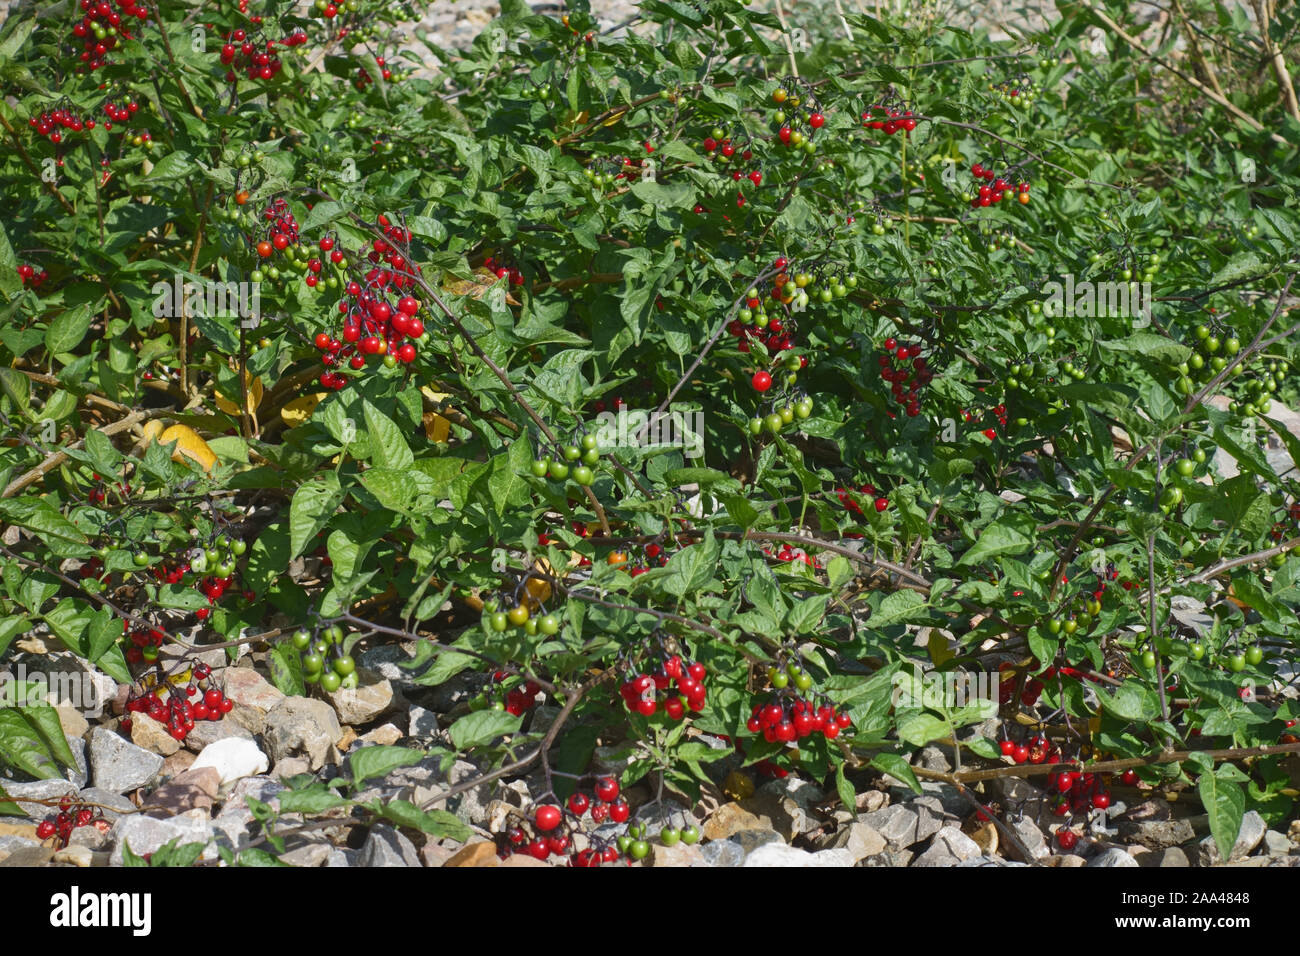 Woody nightshate oder bittersweel (Solanum dulcamara) Pflanze mit leuchtend roten Beeren wachsen in Kies neben einer Bahntrasse, September Stockfoto